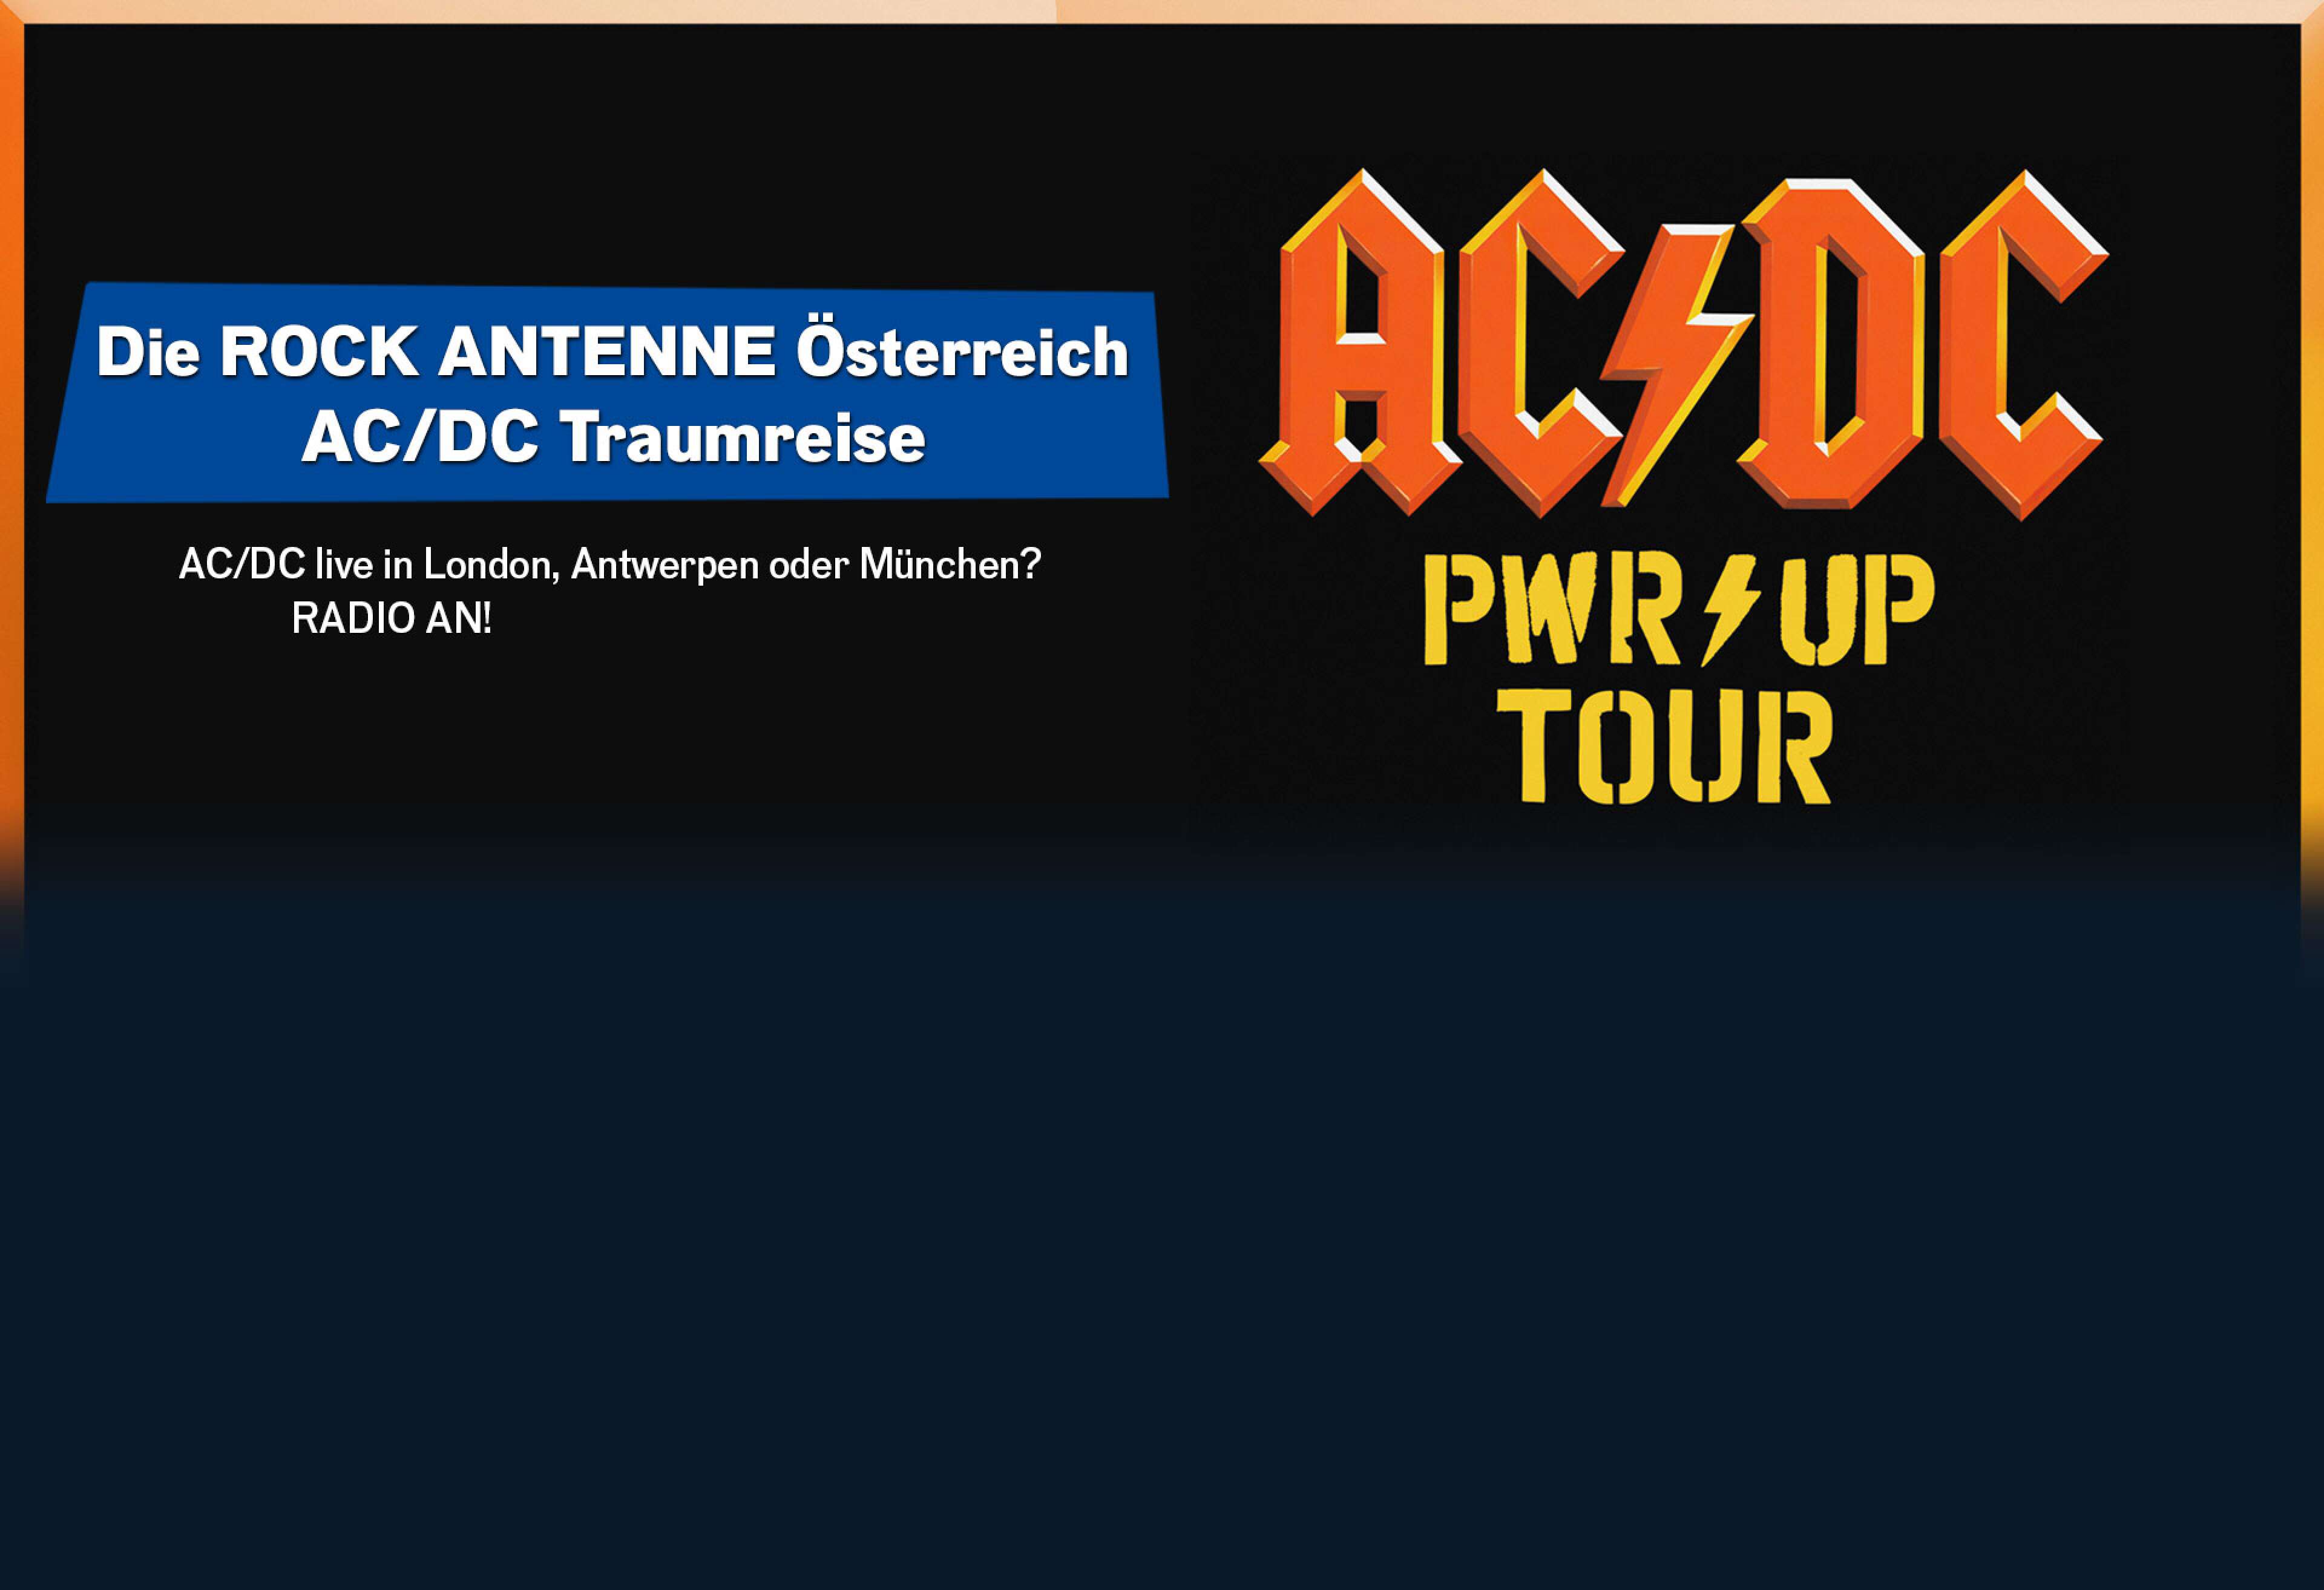 Grafik für die ACDC Traumreise - Logo von AC/DC und der Power Up Tour, dazu der Text: Die ROCK ANTENNE Österreich AC/DC Traumreise - AC/DC live in London, Antwerpen oder München? RADIO AN!